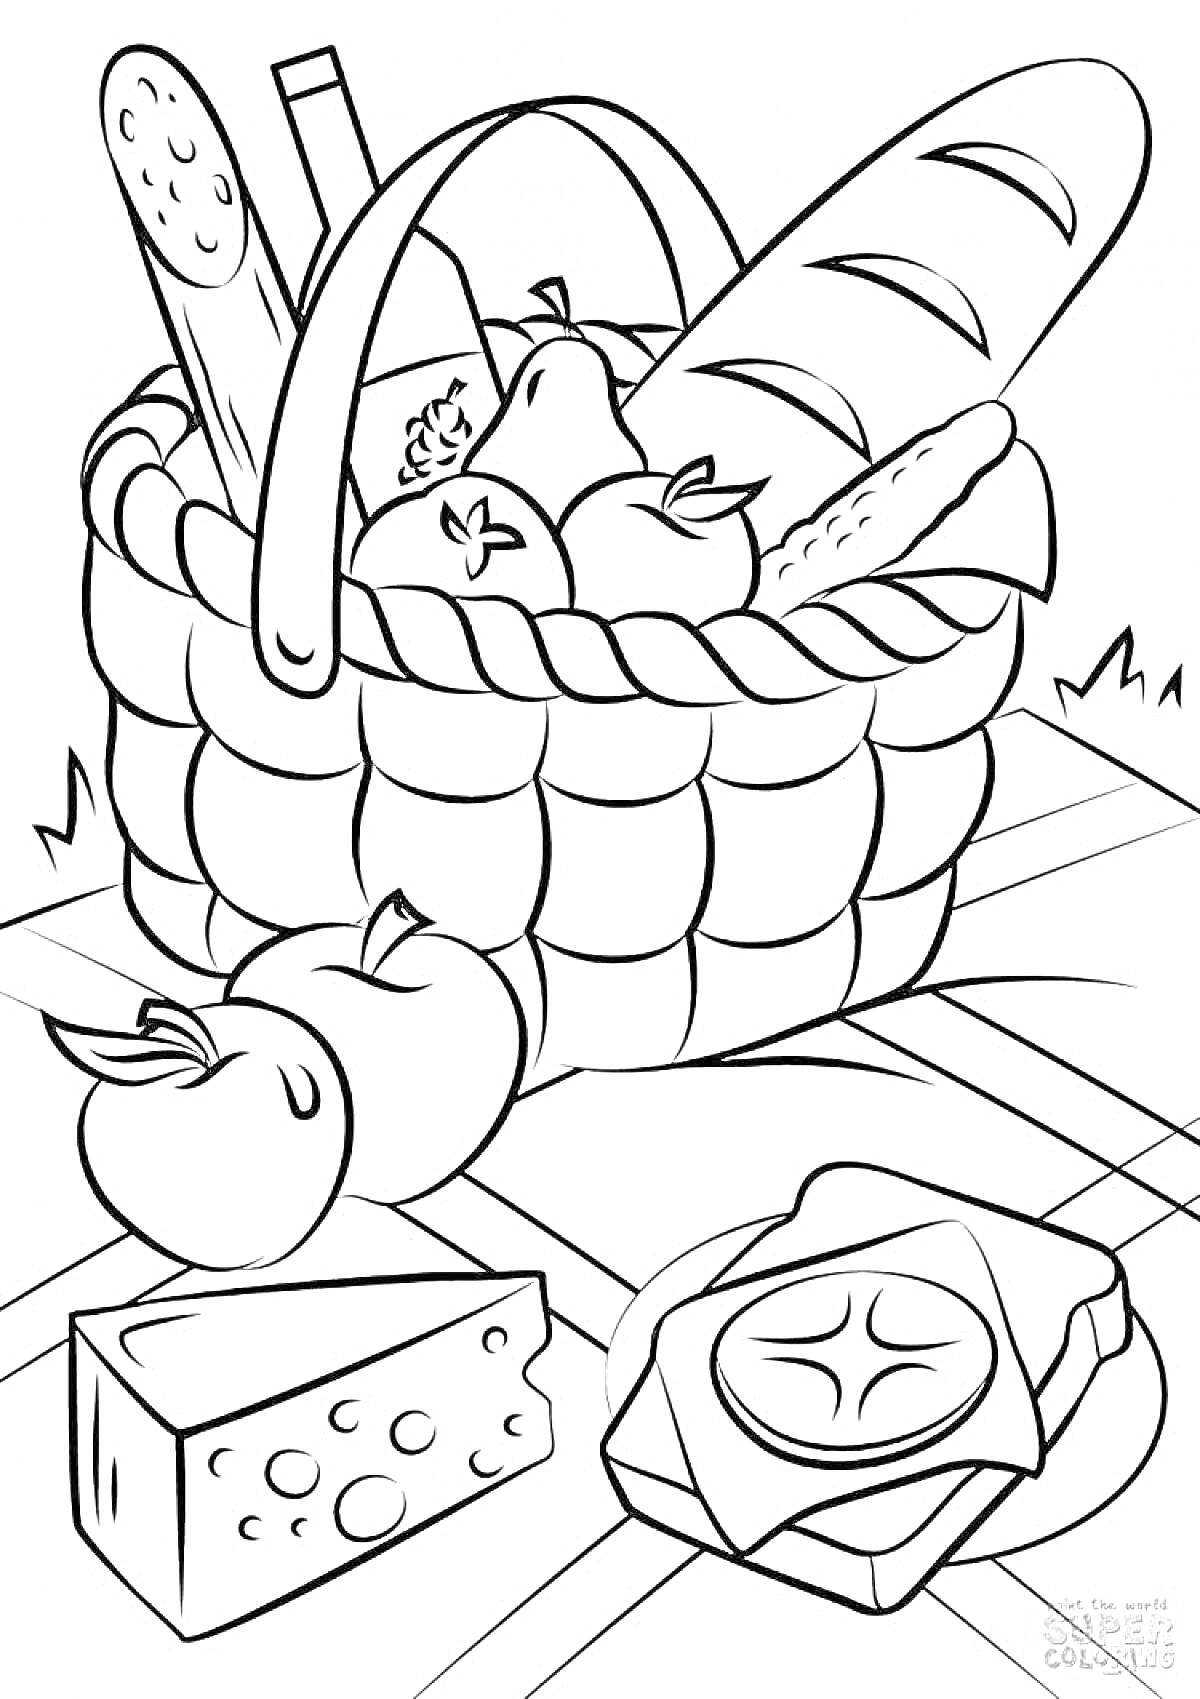 Раскраска Пикник с продуктами в корзине, включая хлеб, бутылку, яблоки, сыр, сендвич и багет